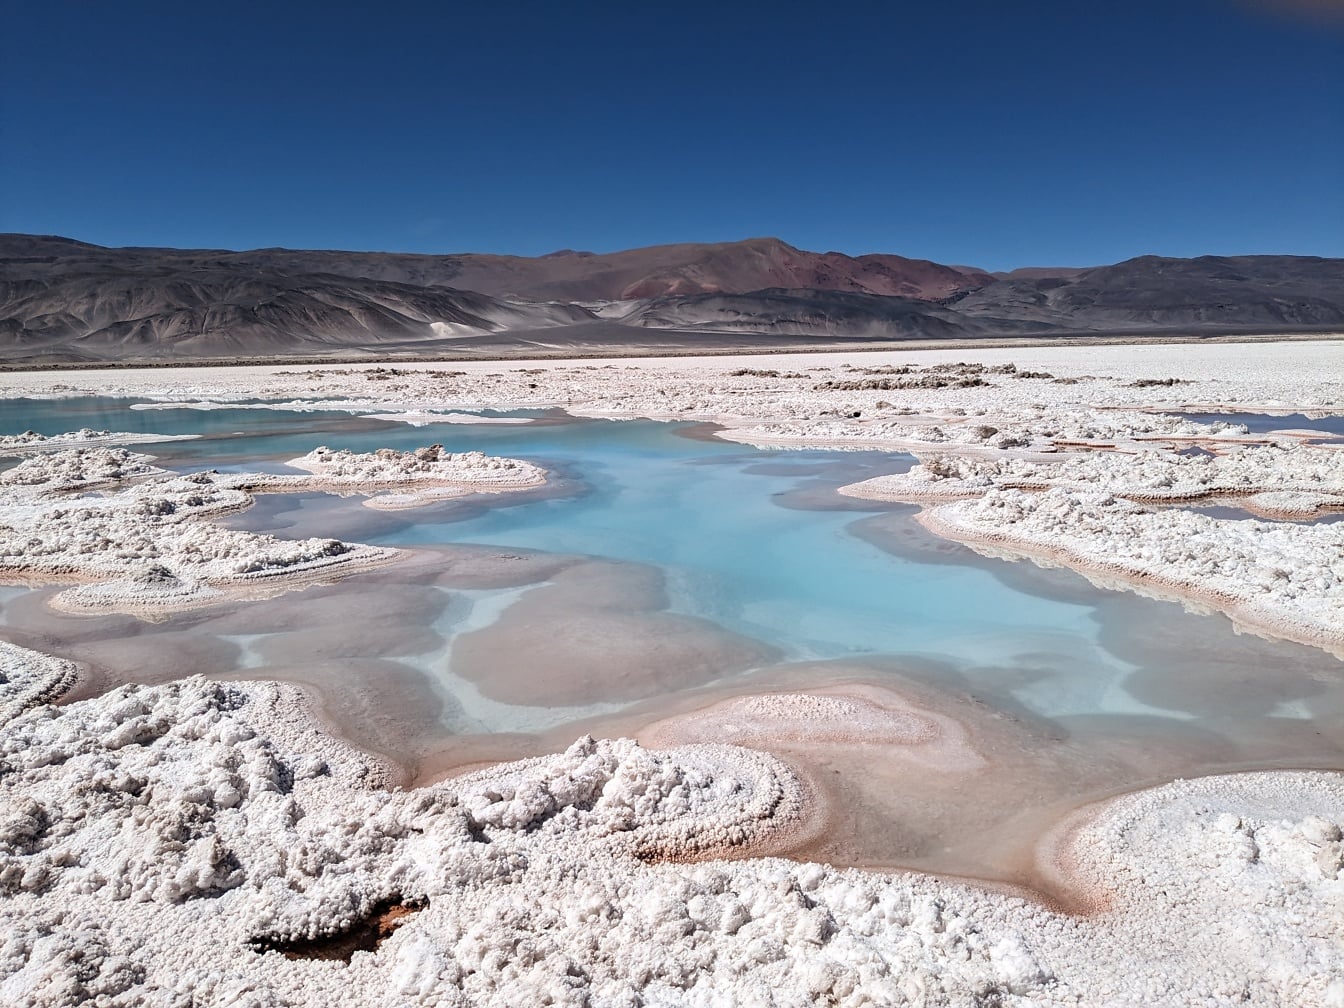 Salar de Antofalla um oásis de pântano salgado com sedimentos de sal em um planalto árido do deserto